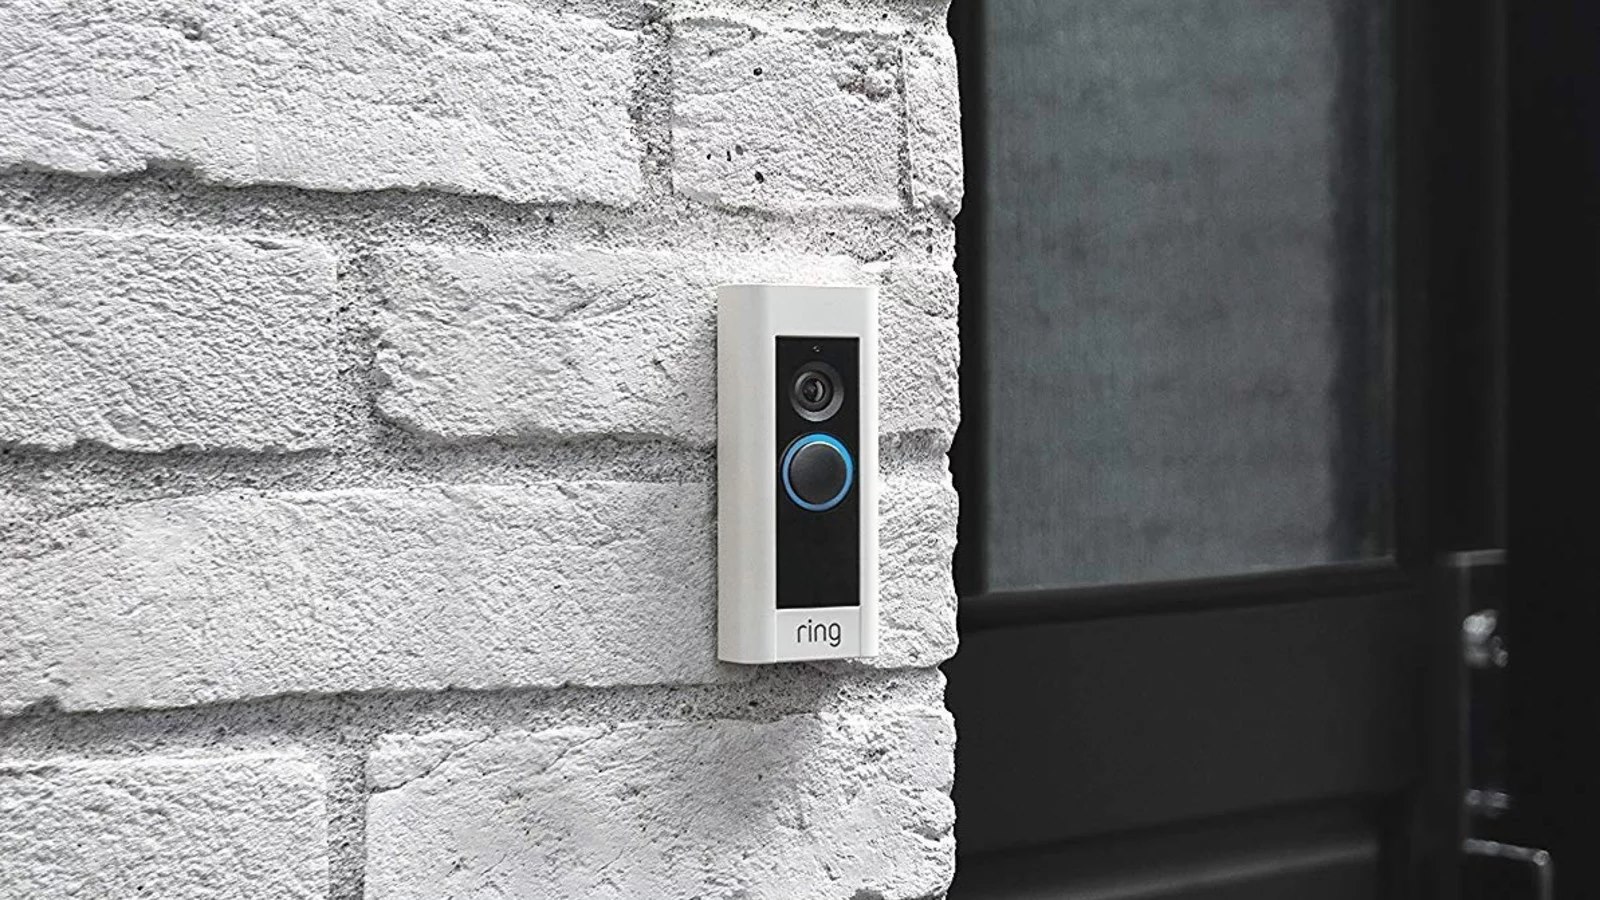 Ring recalls 350,000 smart doorbells over potential fire hazard